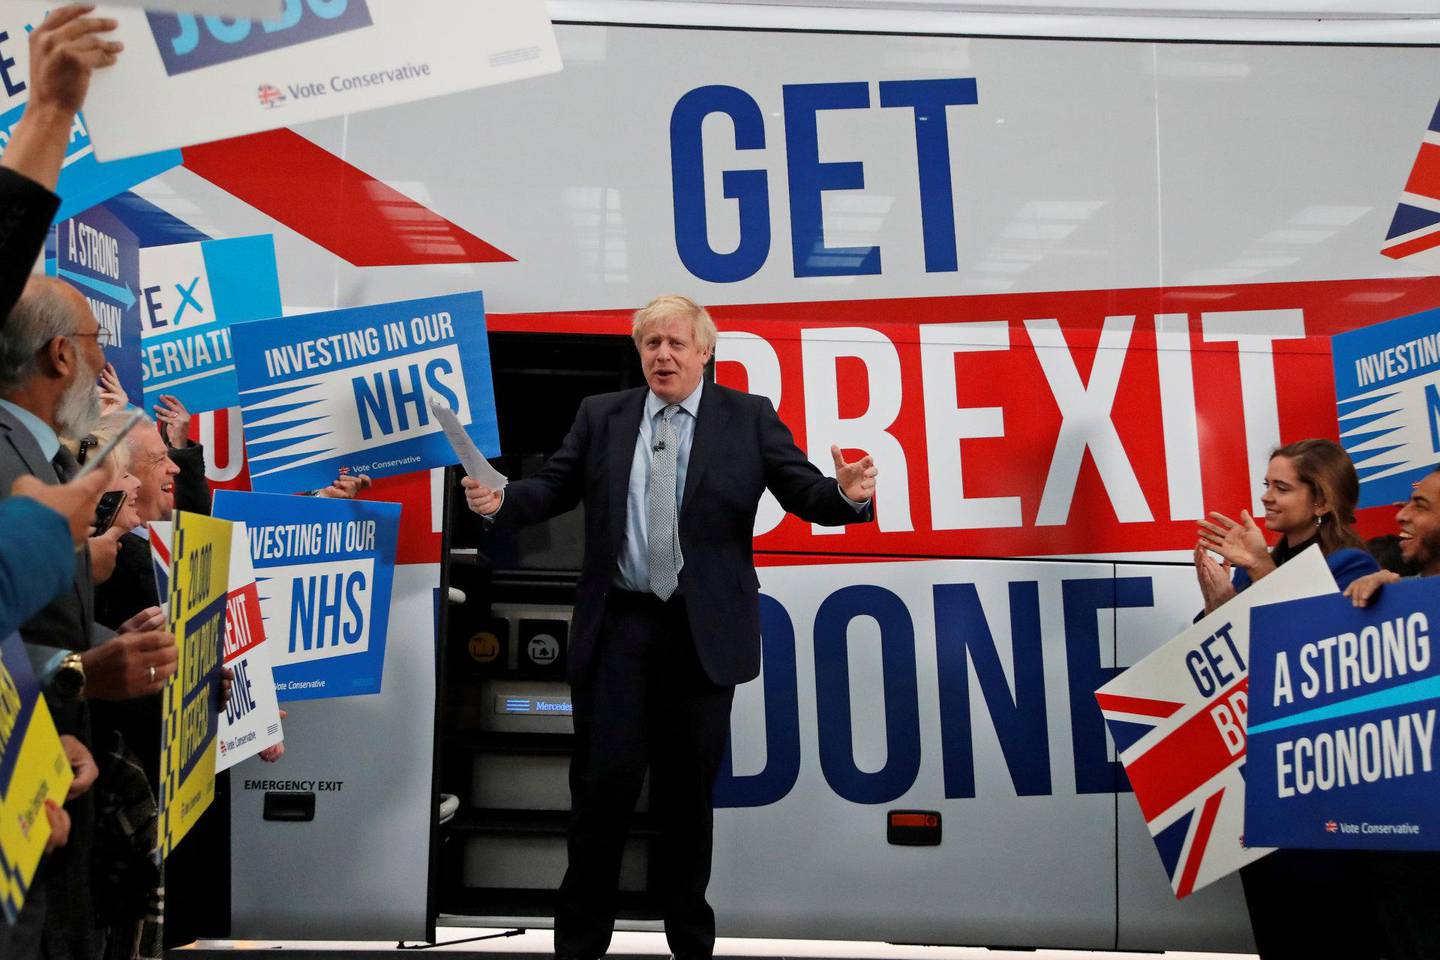 Statsminister Boris Johnson prøver å banke gjennom sitt budskap: «Get brexit done». Her fra Manchester tidligere i november. Foto: NTB scanpix